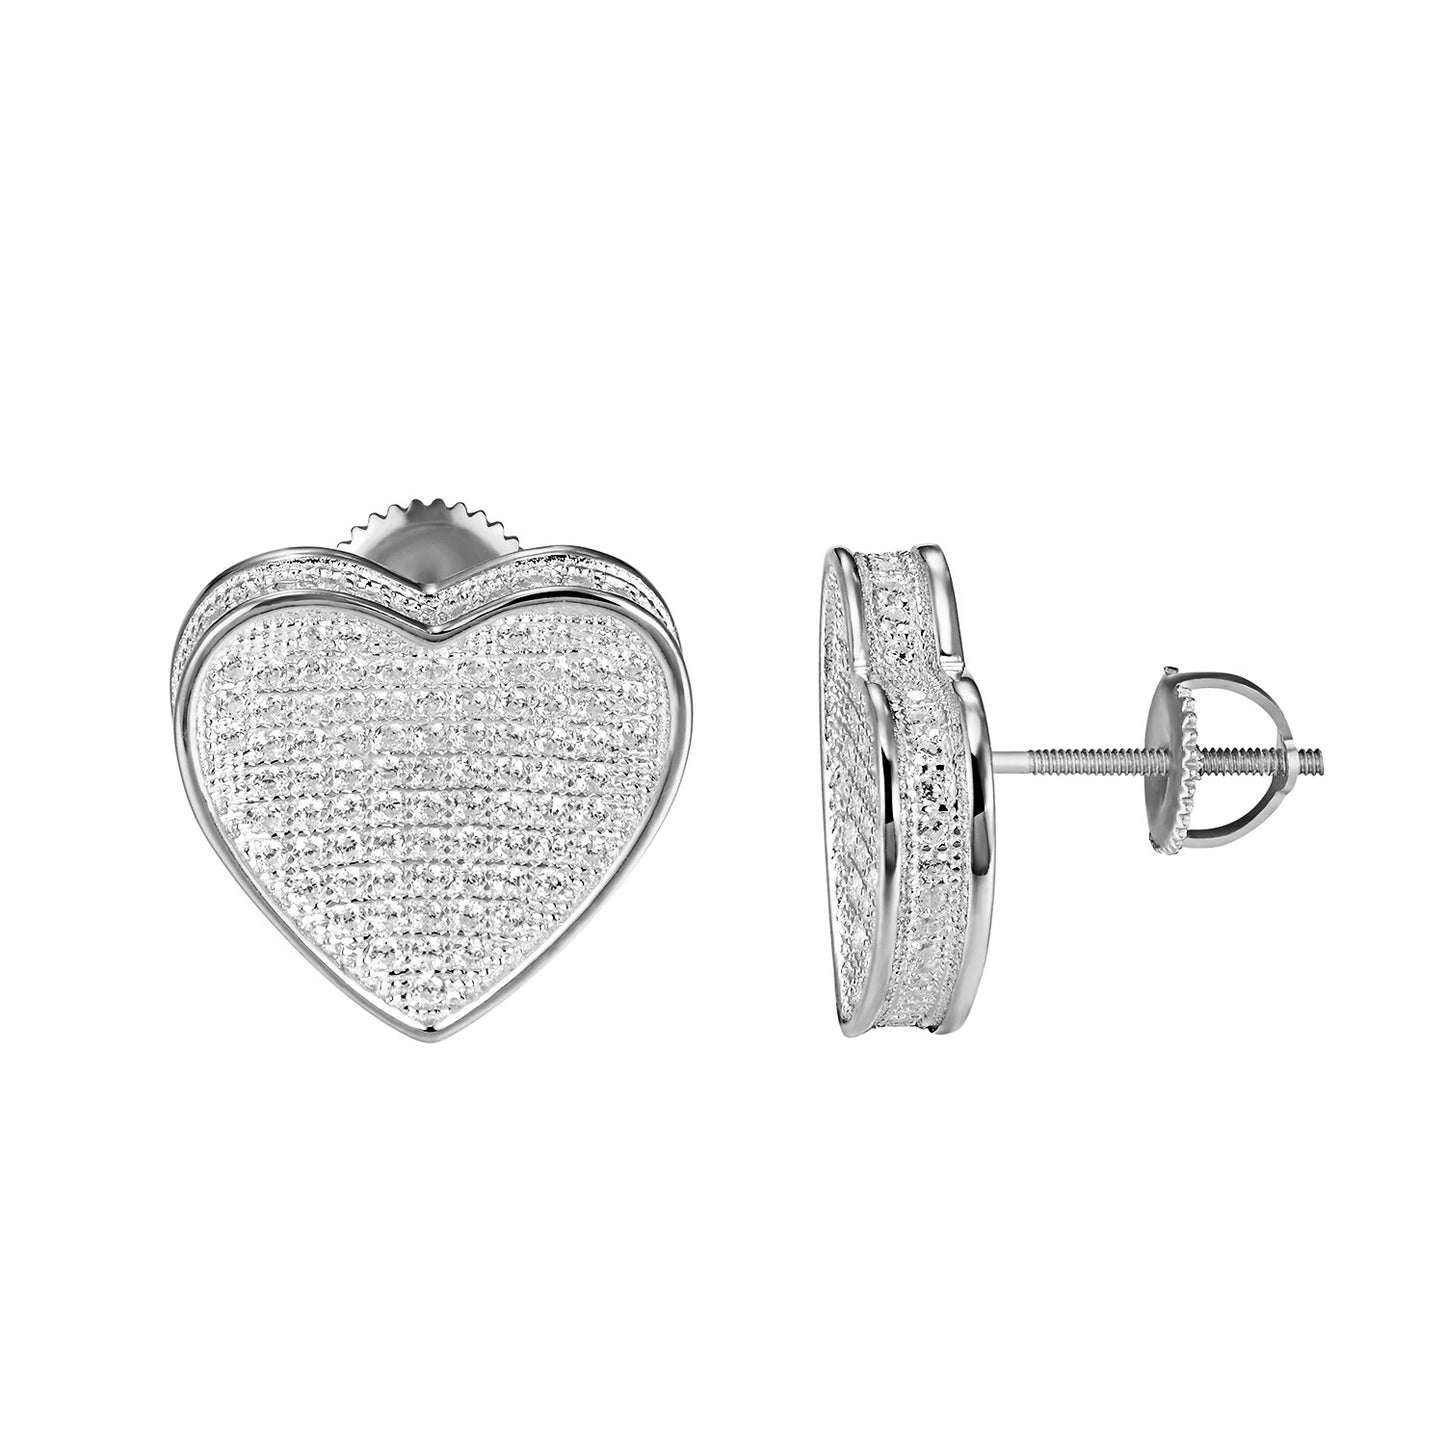 Sterling Silver Heart Shape Earrings Simulated Diamonds Screw On 16mm Classy